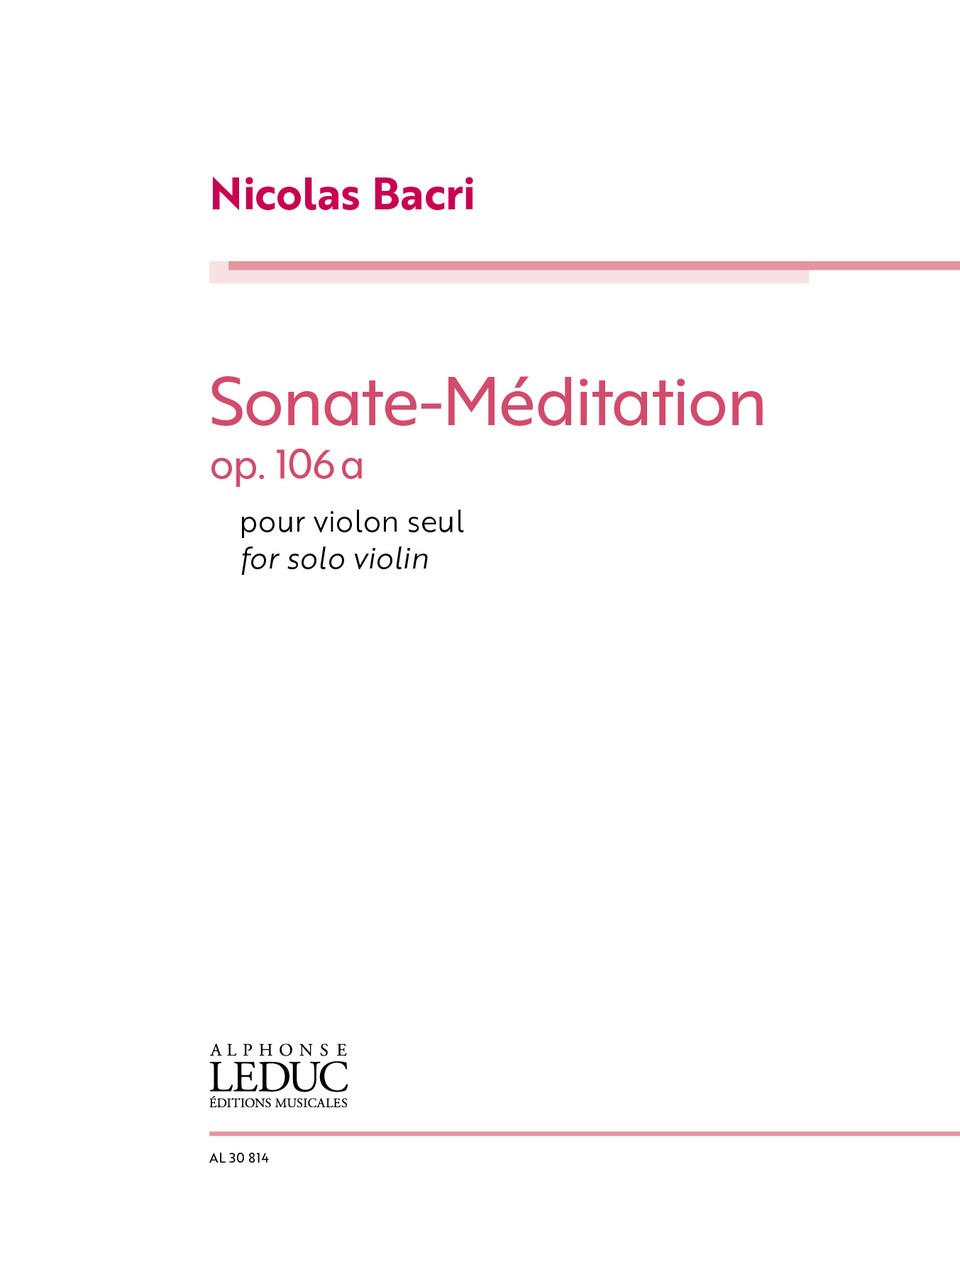 Nicolas Bacri: Sonate-Mditation for Solo Violin Op.106a: Violin: Instrumental